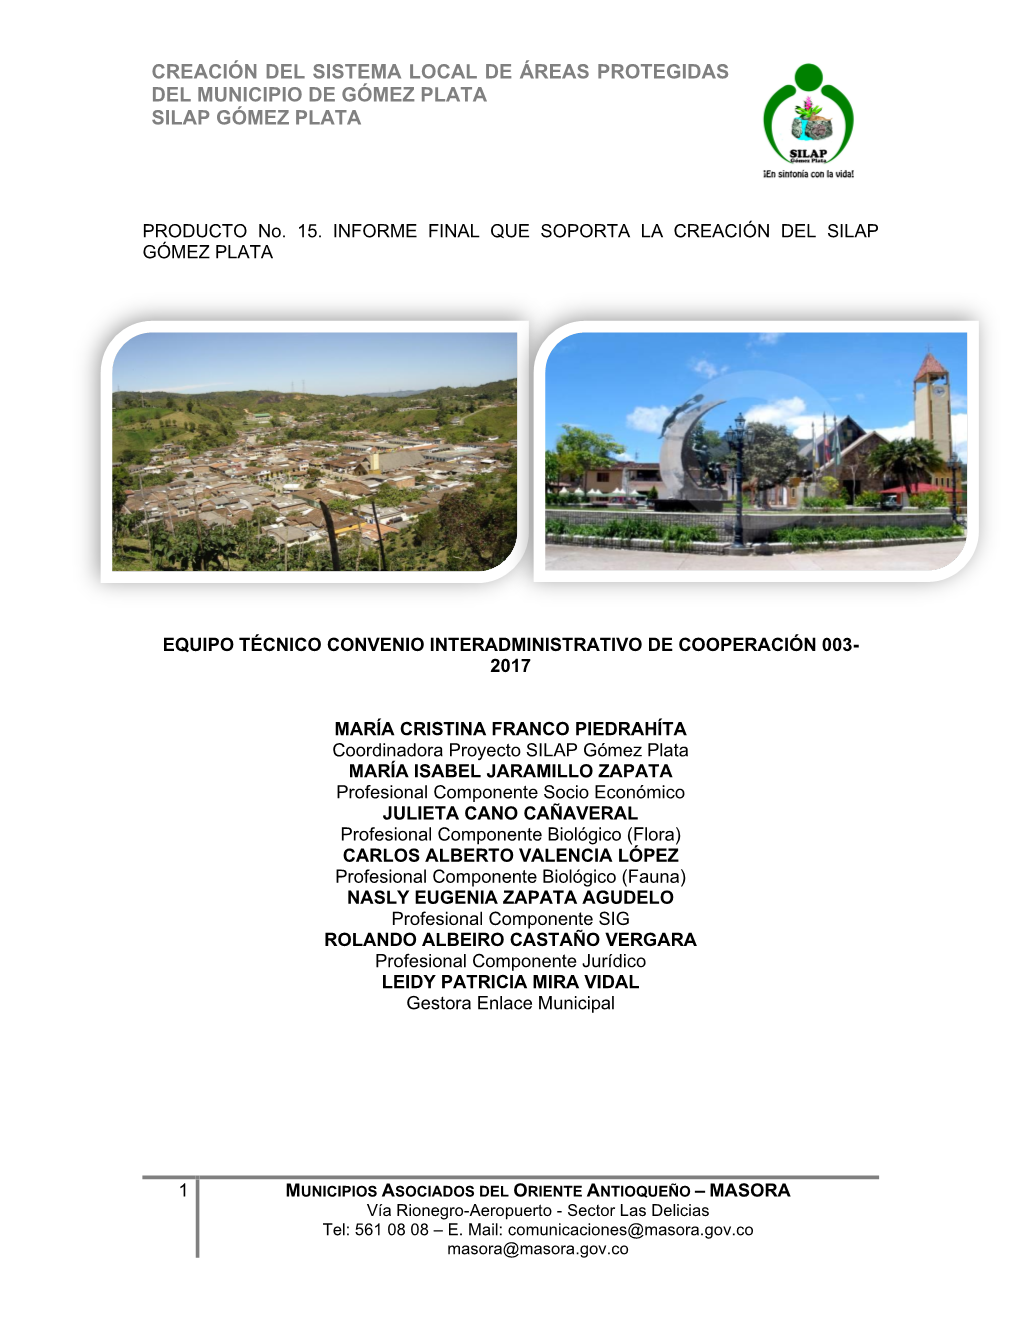 Creación Del Sistema Local De Áreas Protegidas Del Municipio De Gómez Plata Silap Gómez Plata